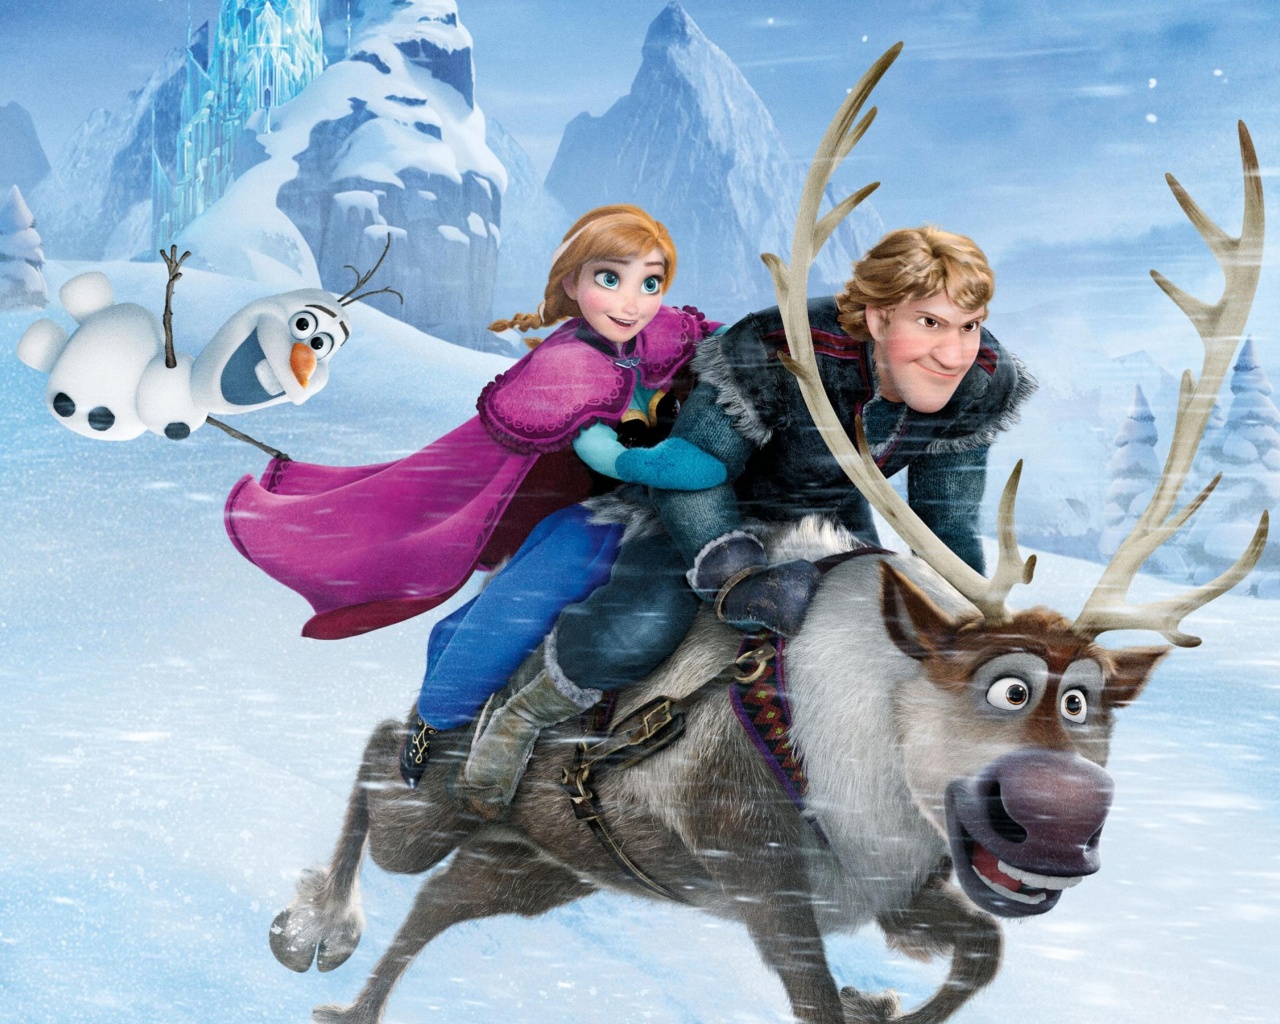 Frozen - Animated Film